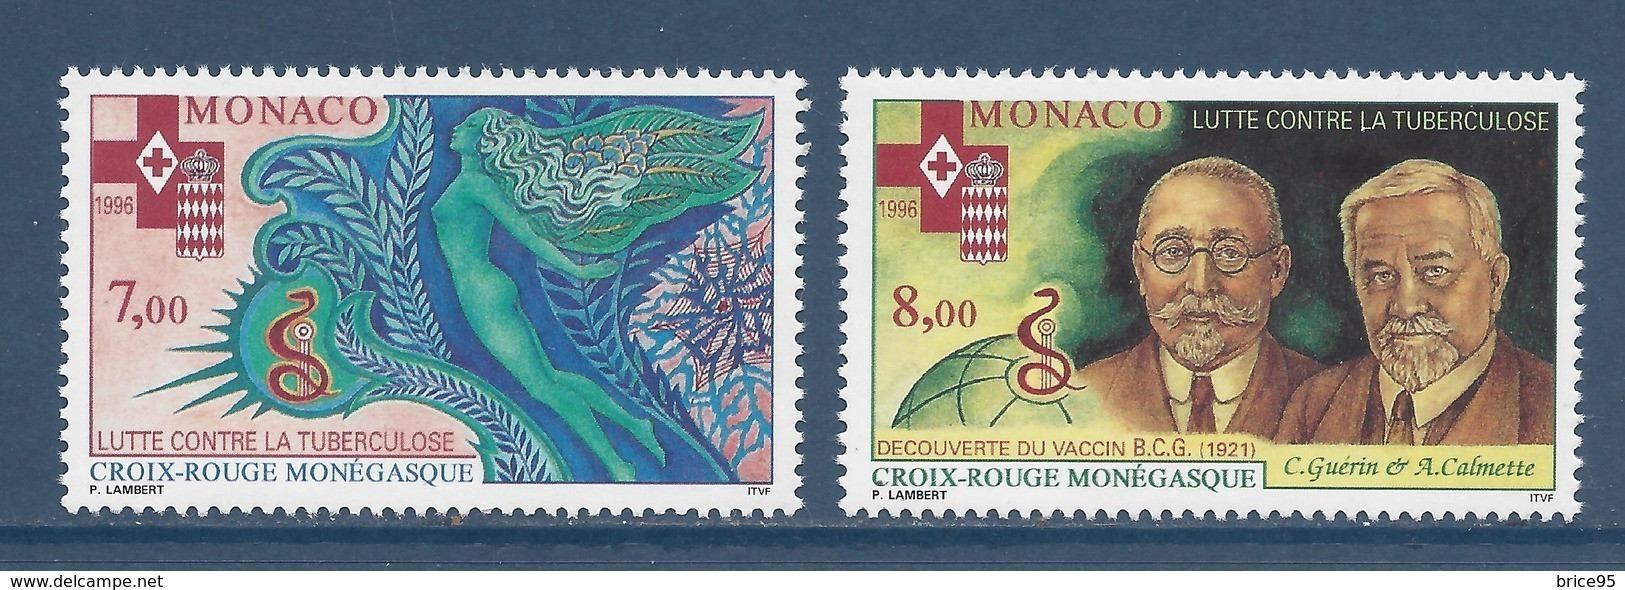 Monaco - YT N° 2063 Et 2064 ** - Neuf Sans Charnière - 1996 - Ongebruikt